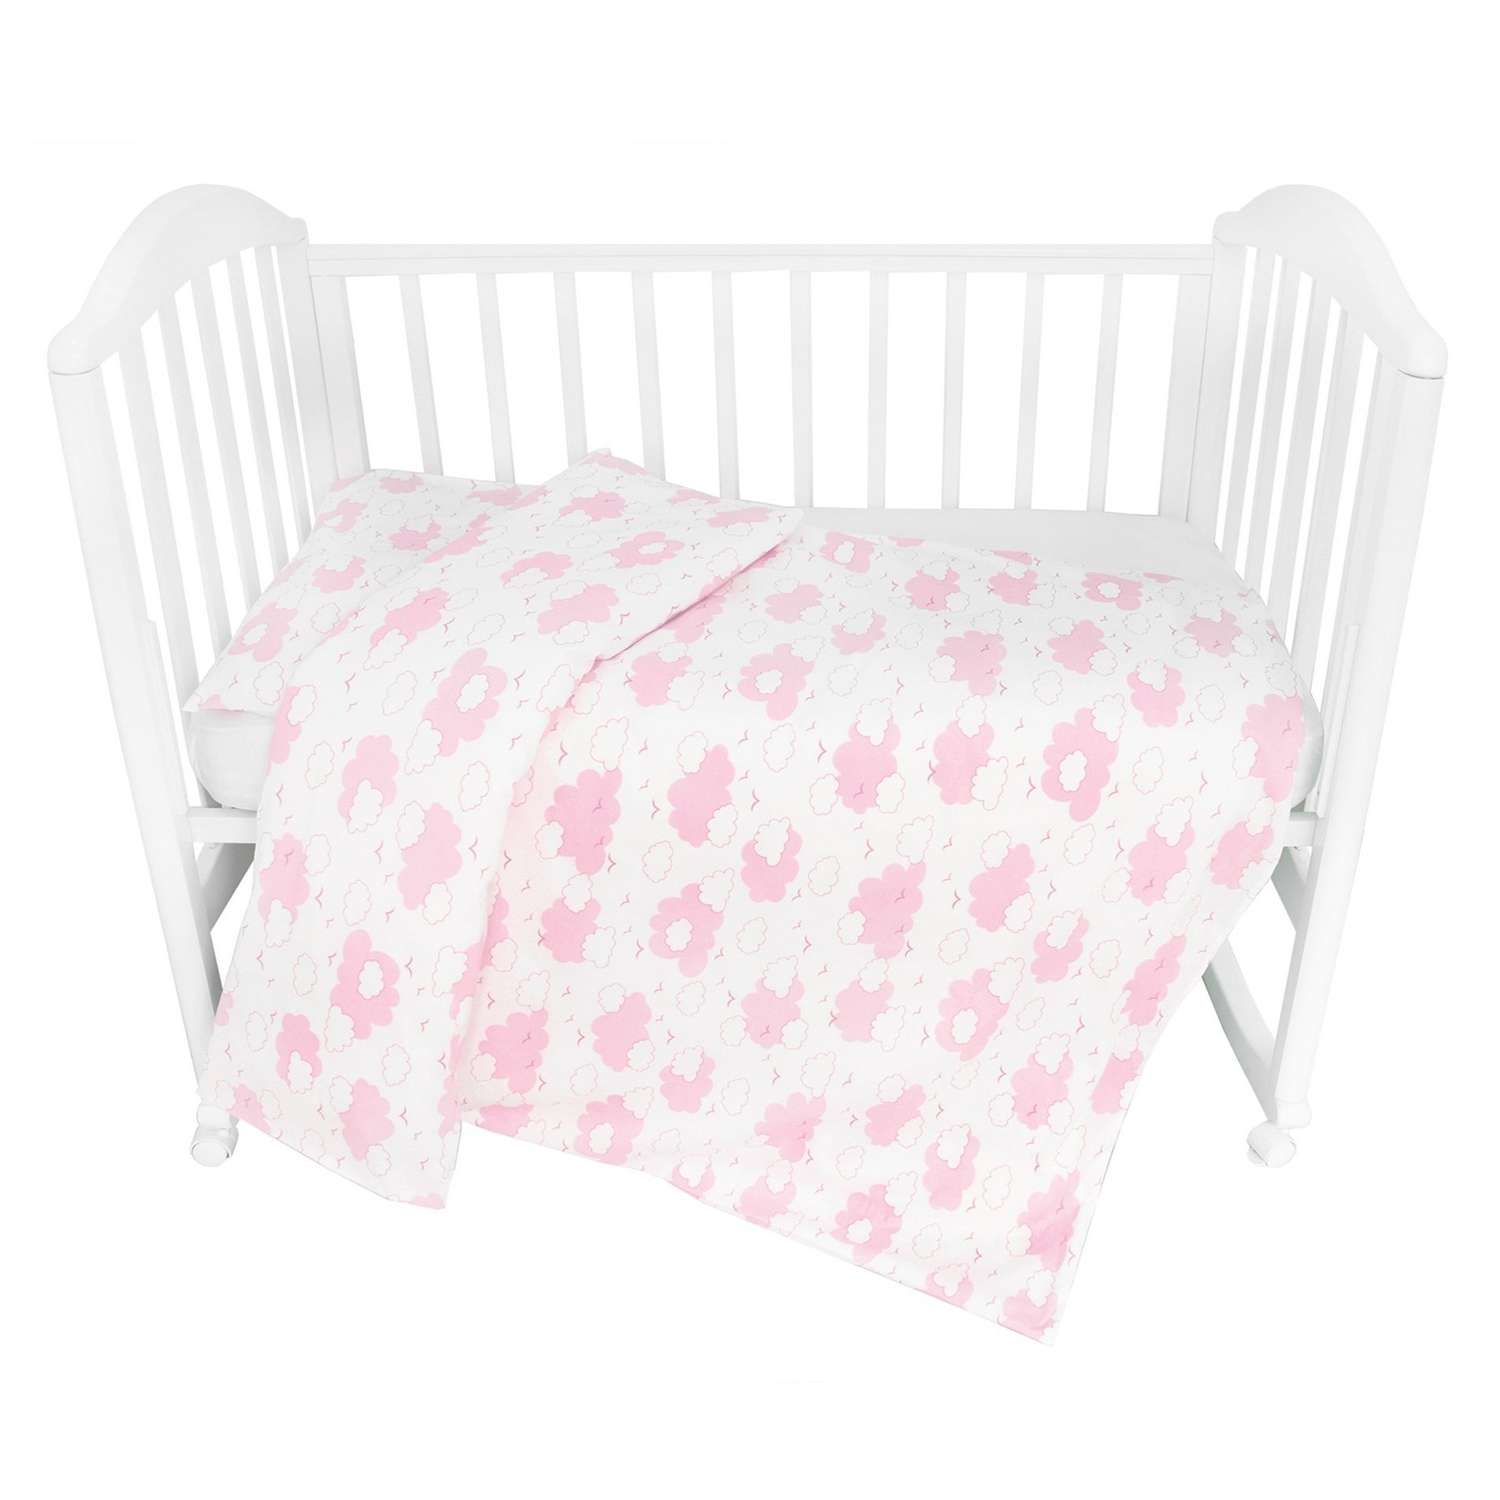 Комплект постельного белья Споки Ноки Облака Розовый 3предмета DMC111/6RO - фото 2